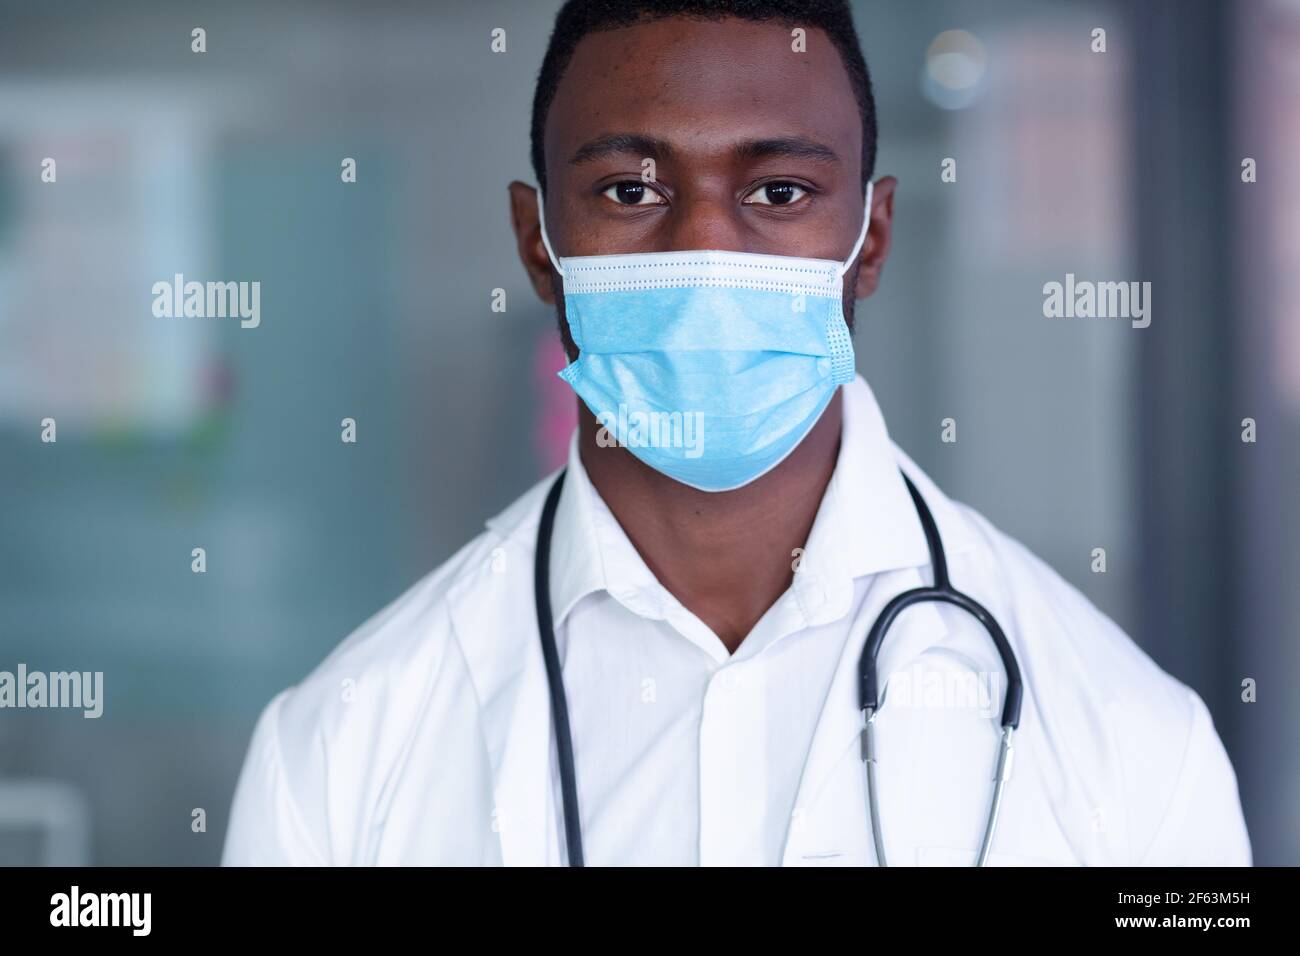 Ritratto del medico africano americano che indossa maschera facciale, cappotto bianco e stetoscopio Foto Stock